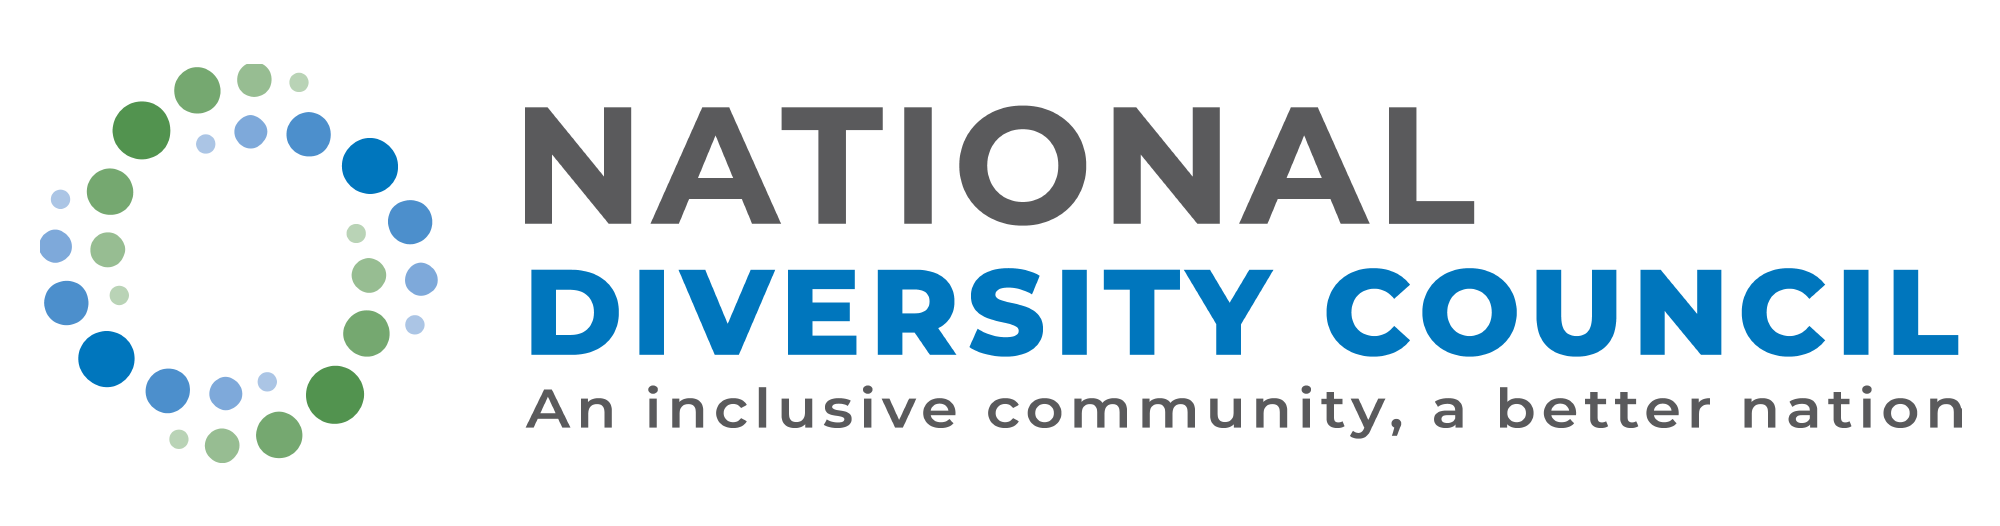 NDC logo